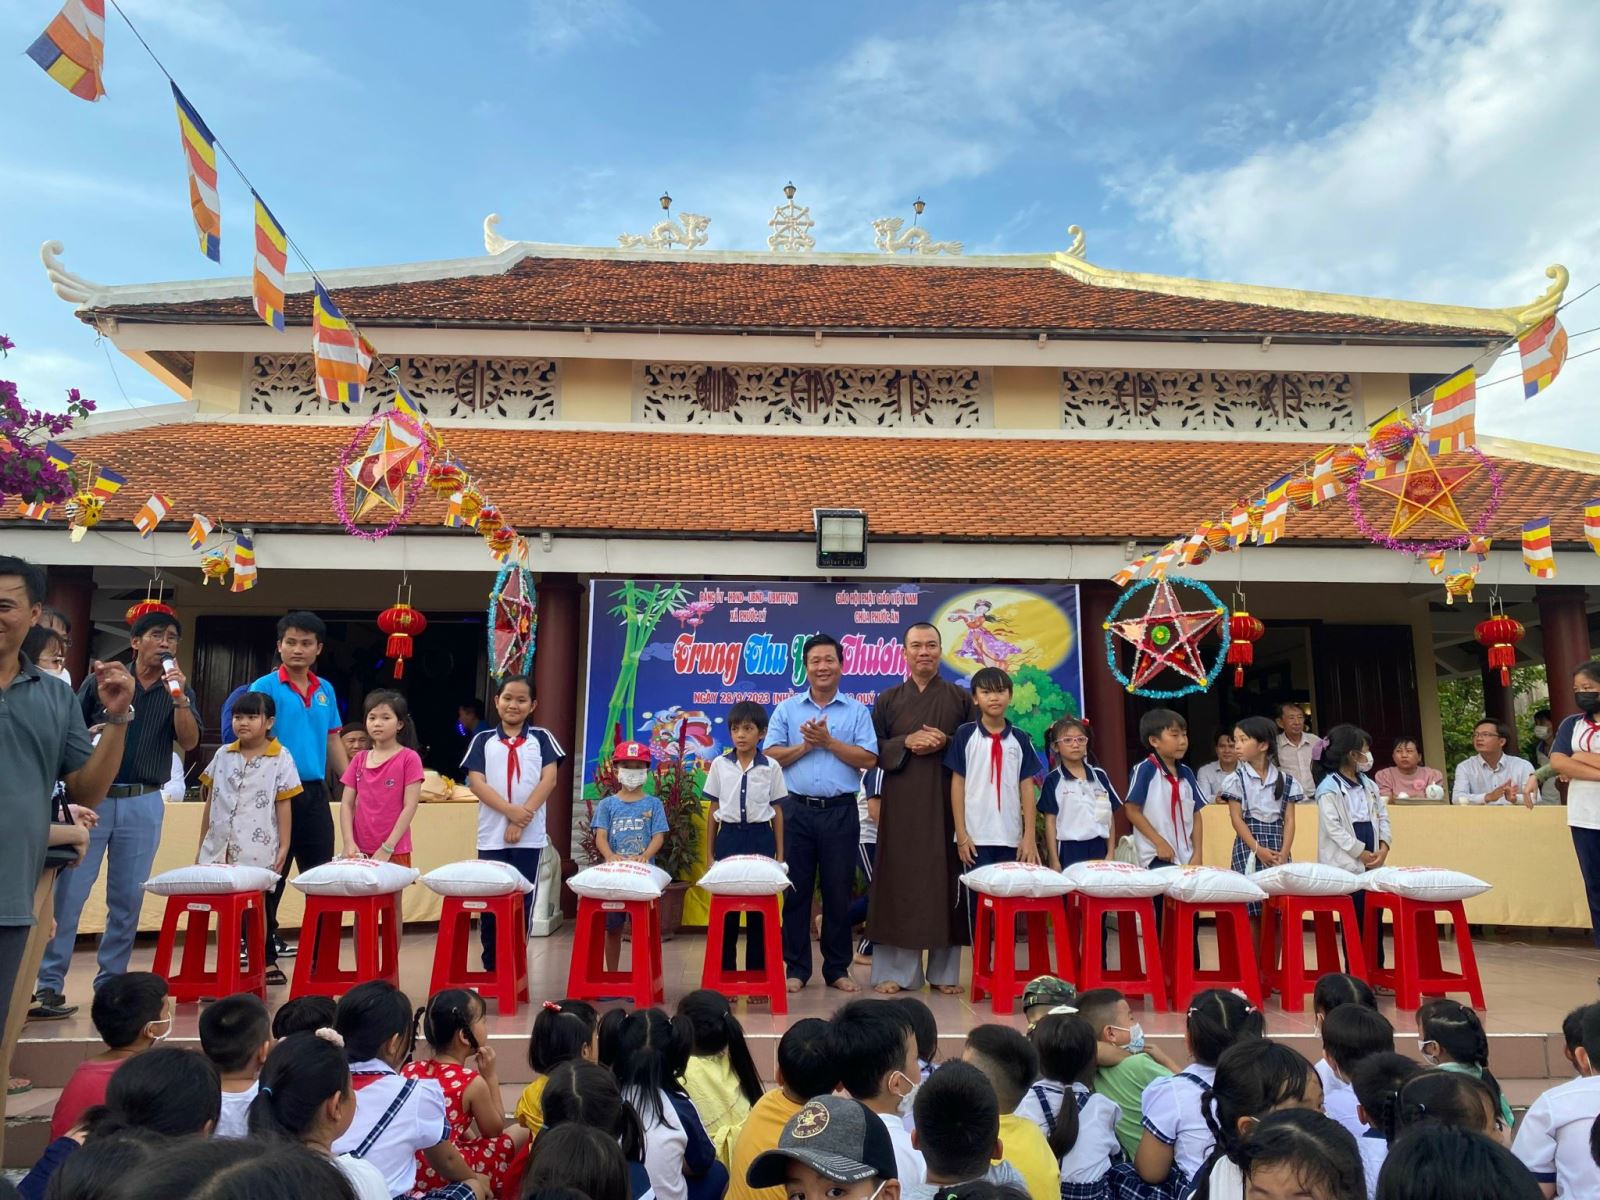 Ủy ban nhân dân xã Phước Lý phối hợp với chùa Phước Ân tổ chức đêm hội trăng rằm cho các em học sinh trường Tiểu học Phước Lý